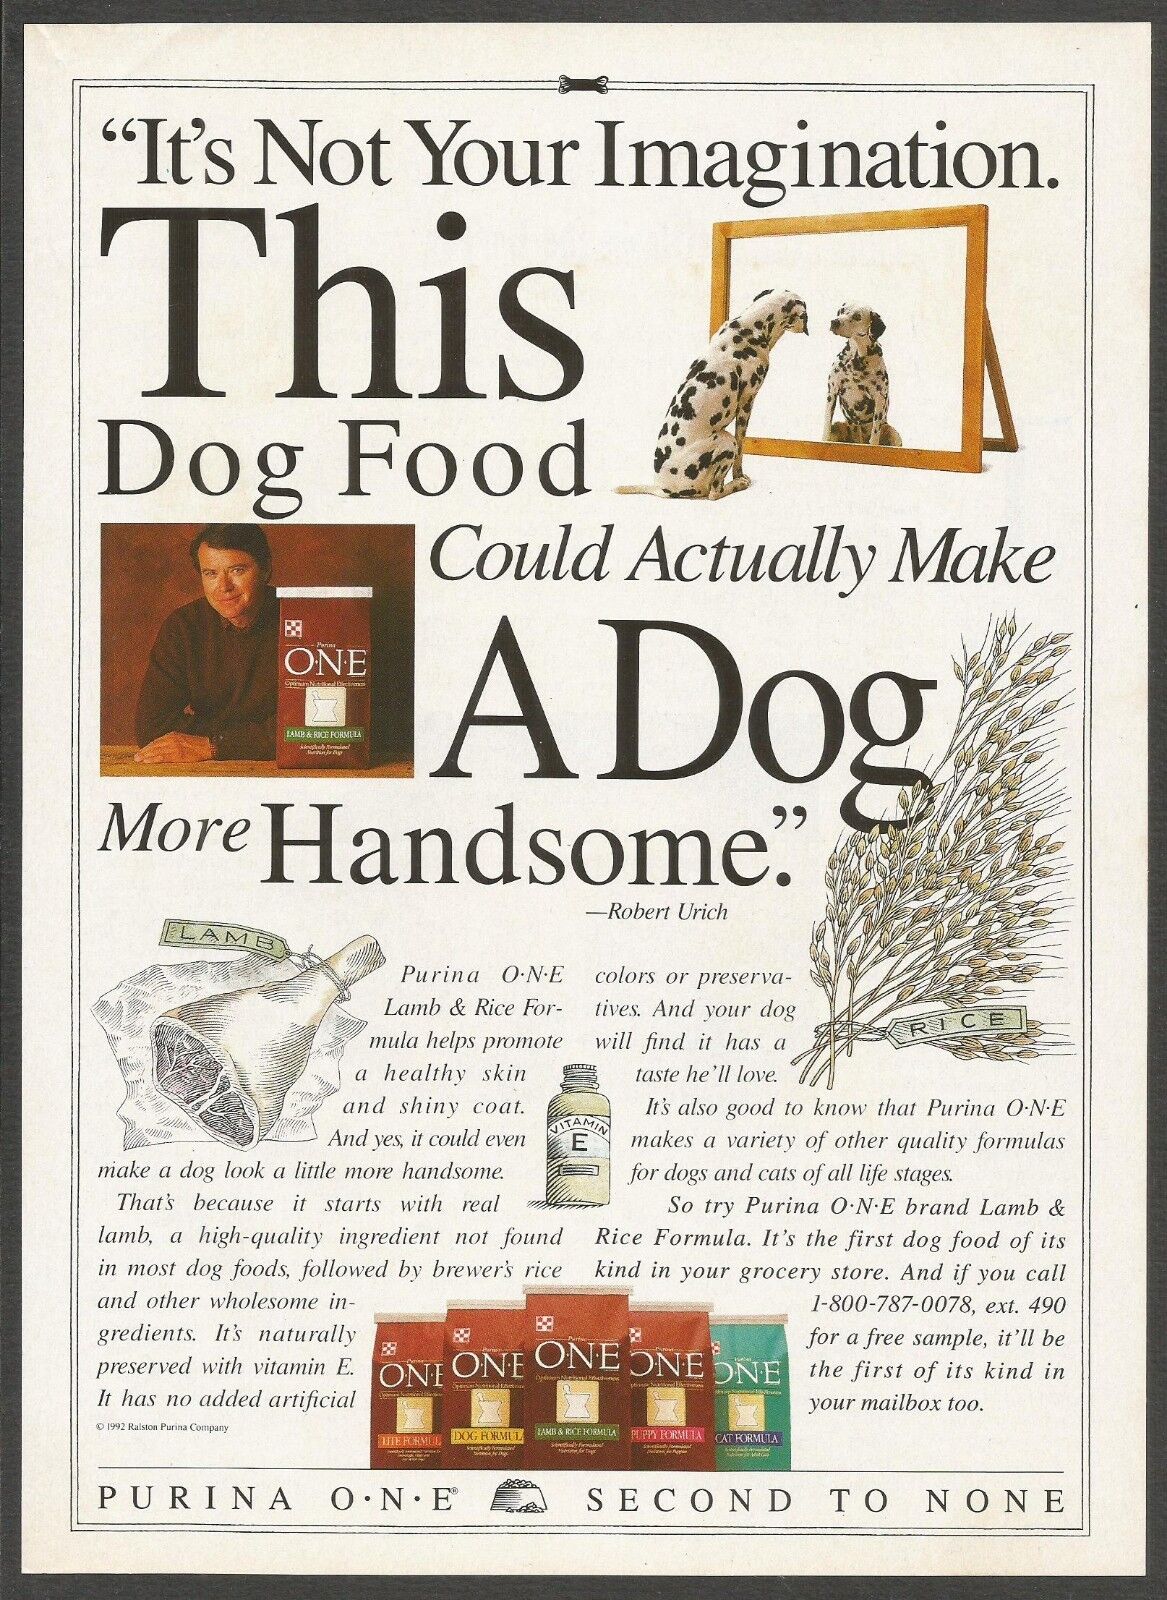 Purina O.N.E Lamb & Rice Formula - Dog Food - 1995 Print Ad